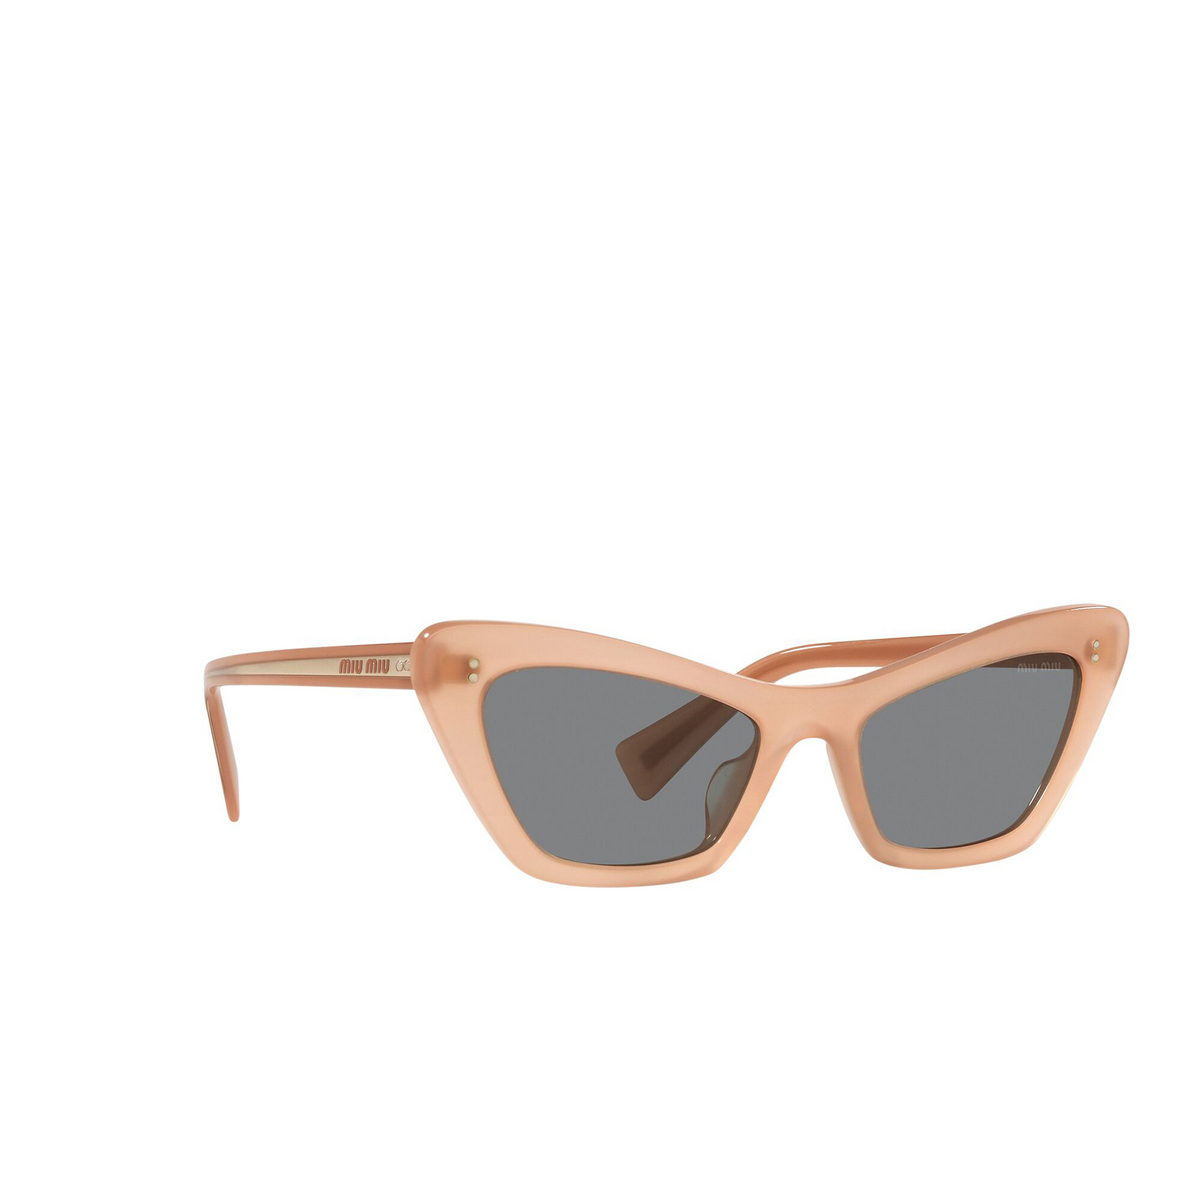 Miu Miu® Cat-eye Sunglasses: MU 03XS color Pink Transparent 02M05H - three-quarters view.